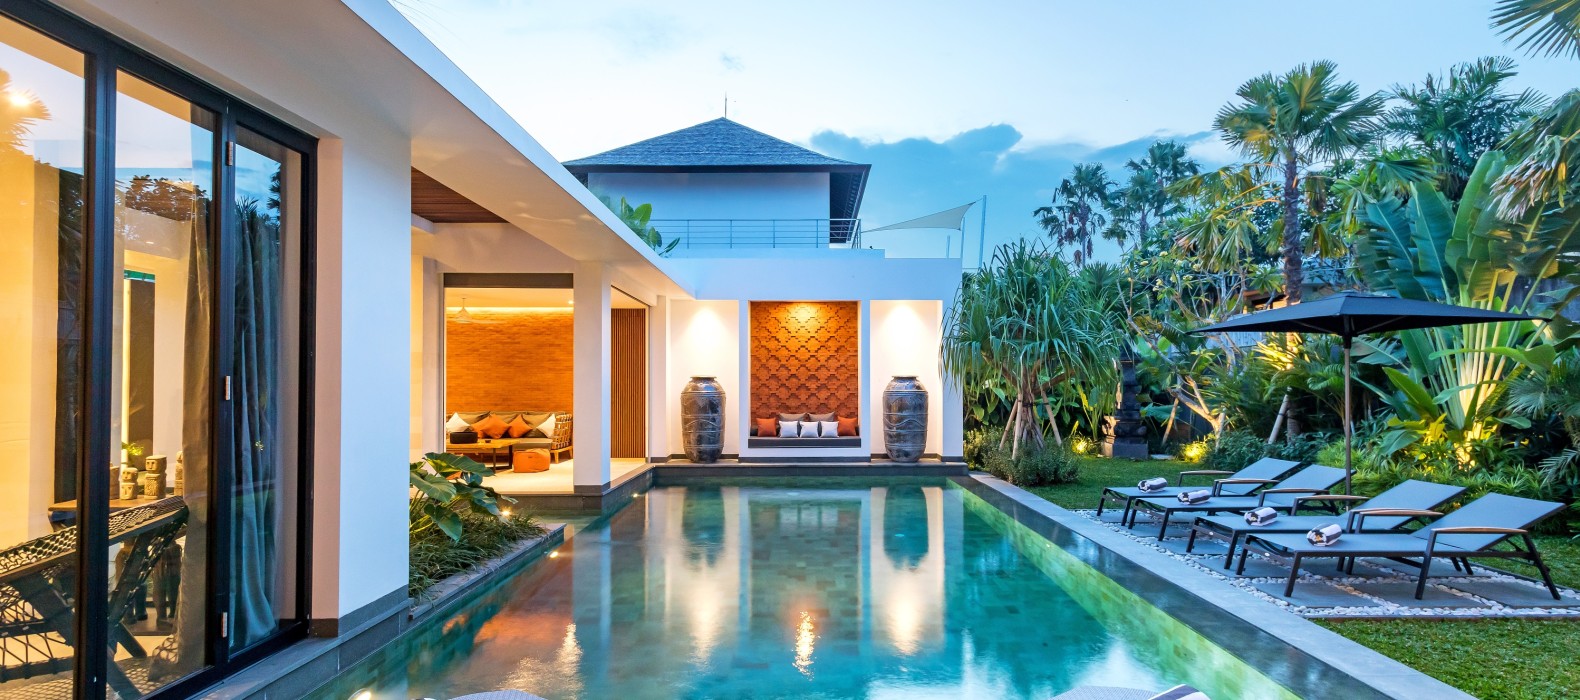 Exterior pool view of Villa Castil de Udara in Bali